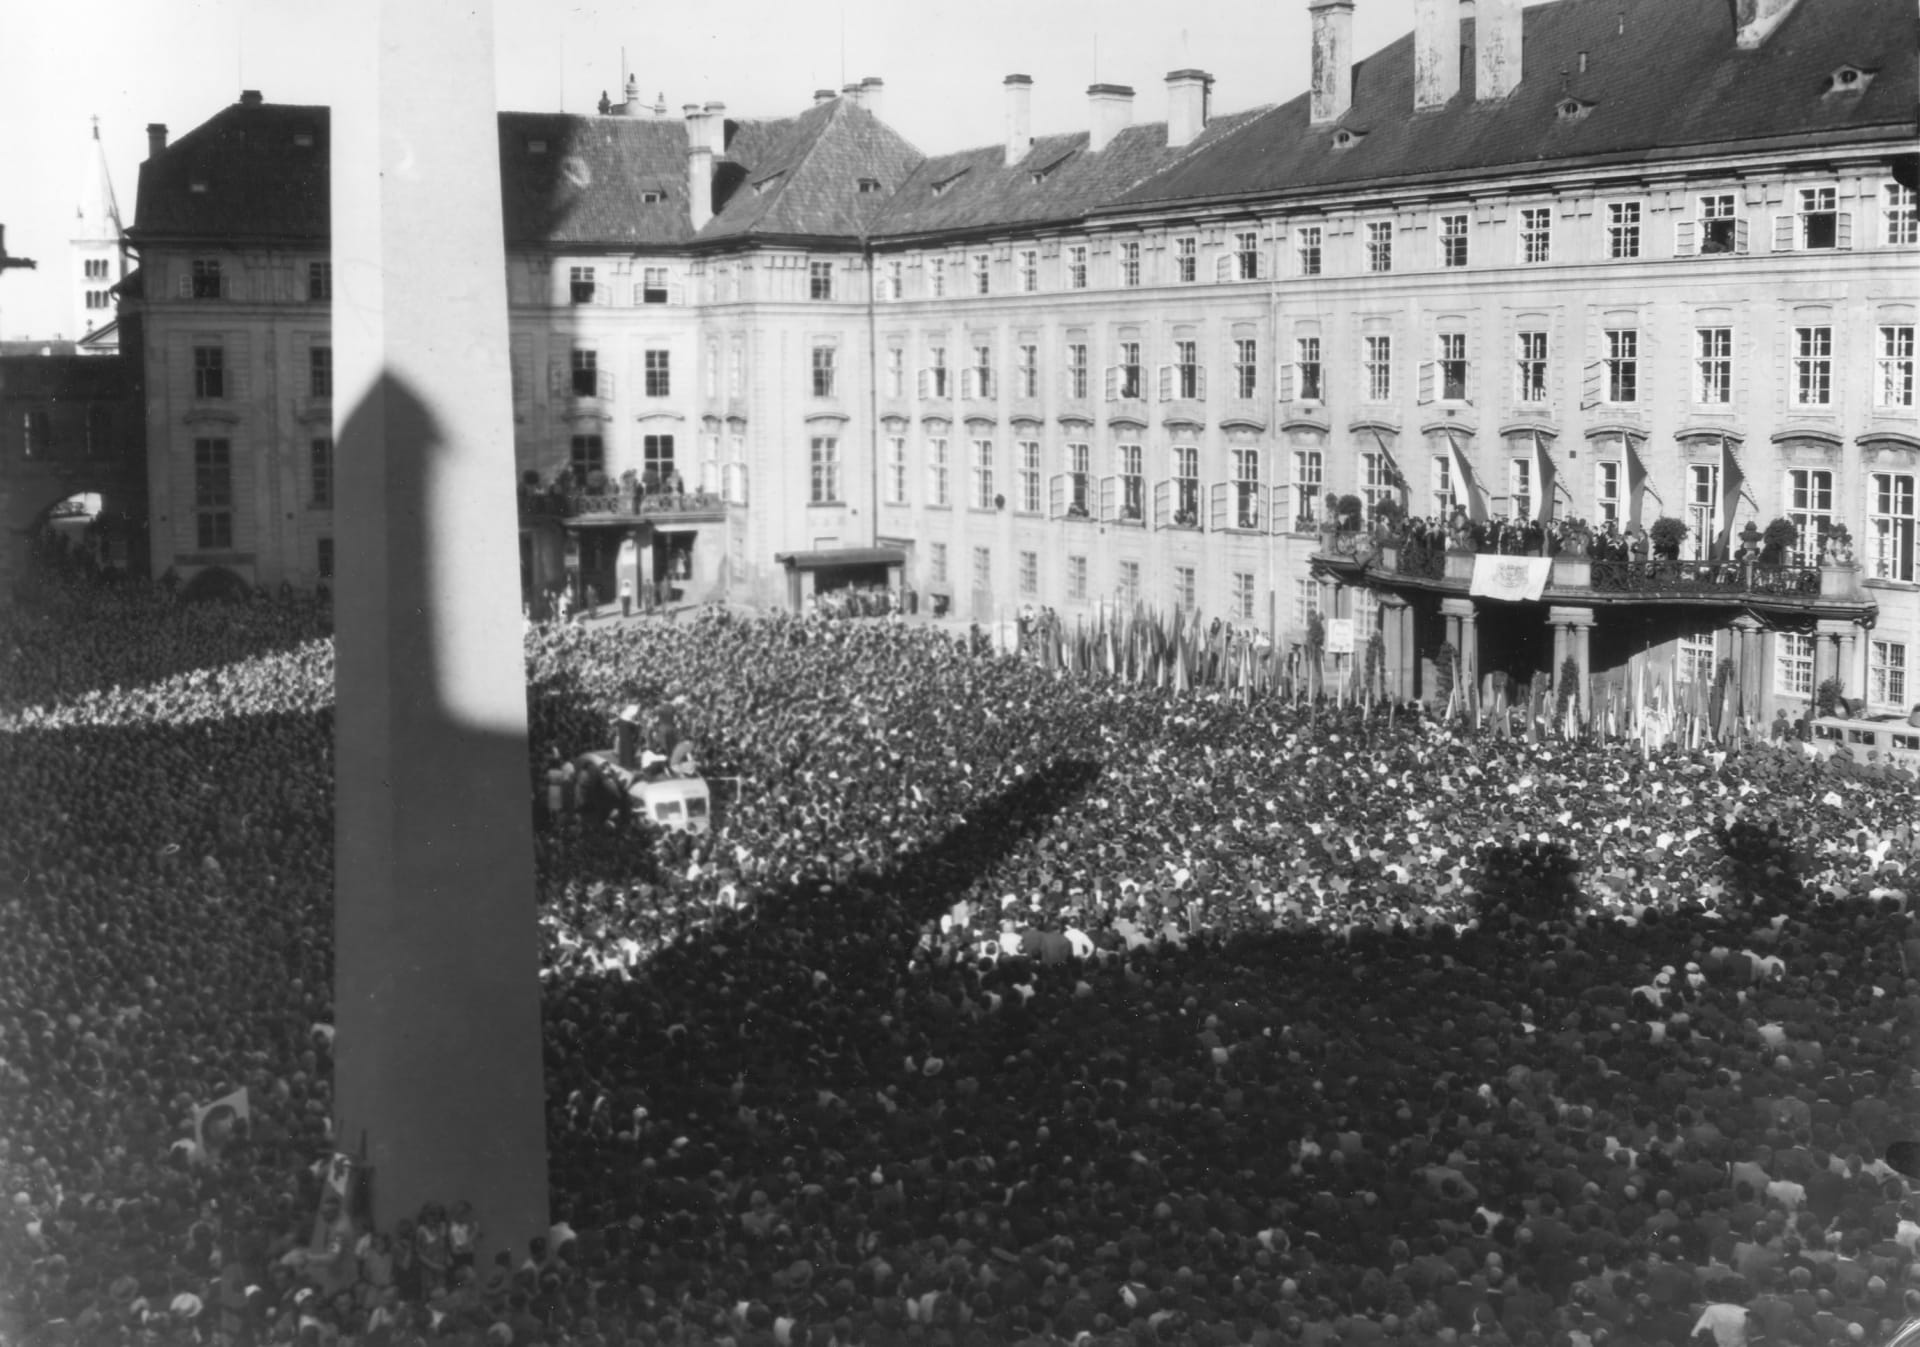 Prezident Klement Gottwald zdraví veřejnost z balkonu Pražského hradu.